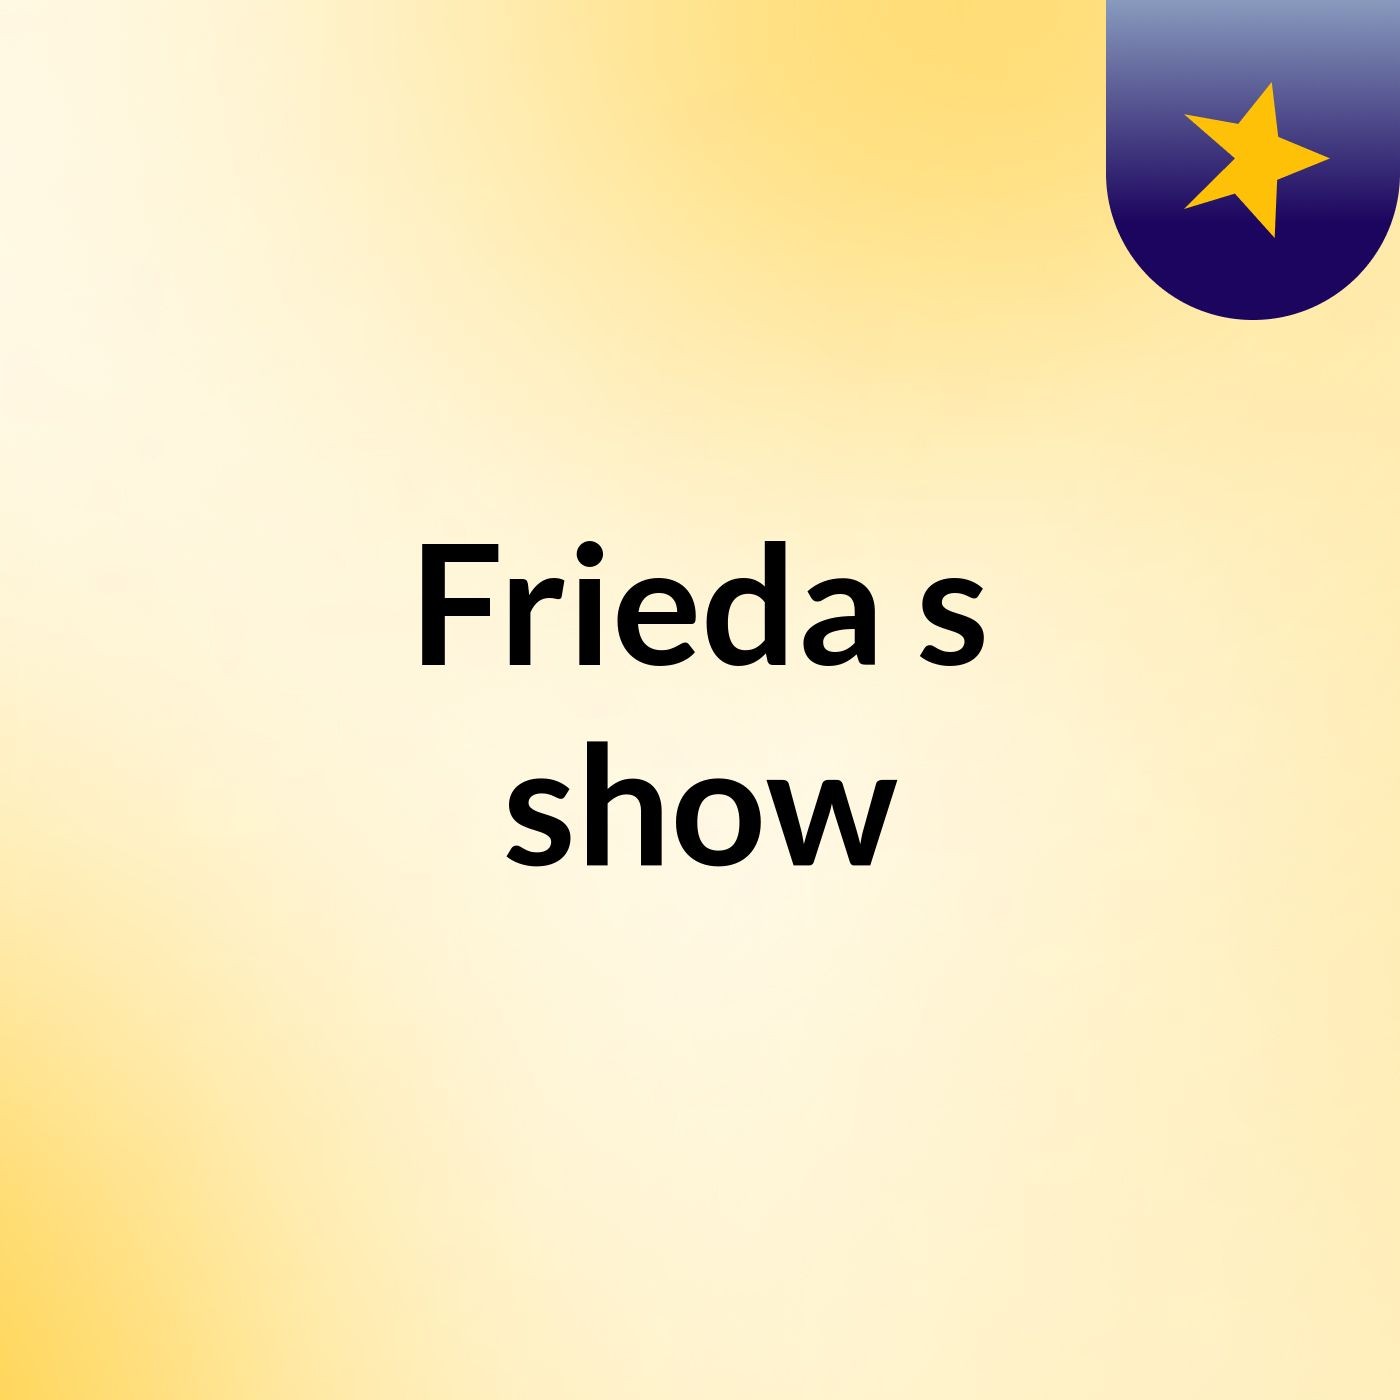 Frieda's show